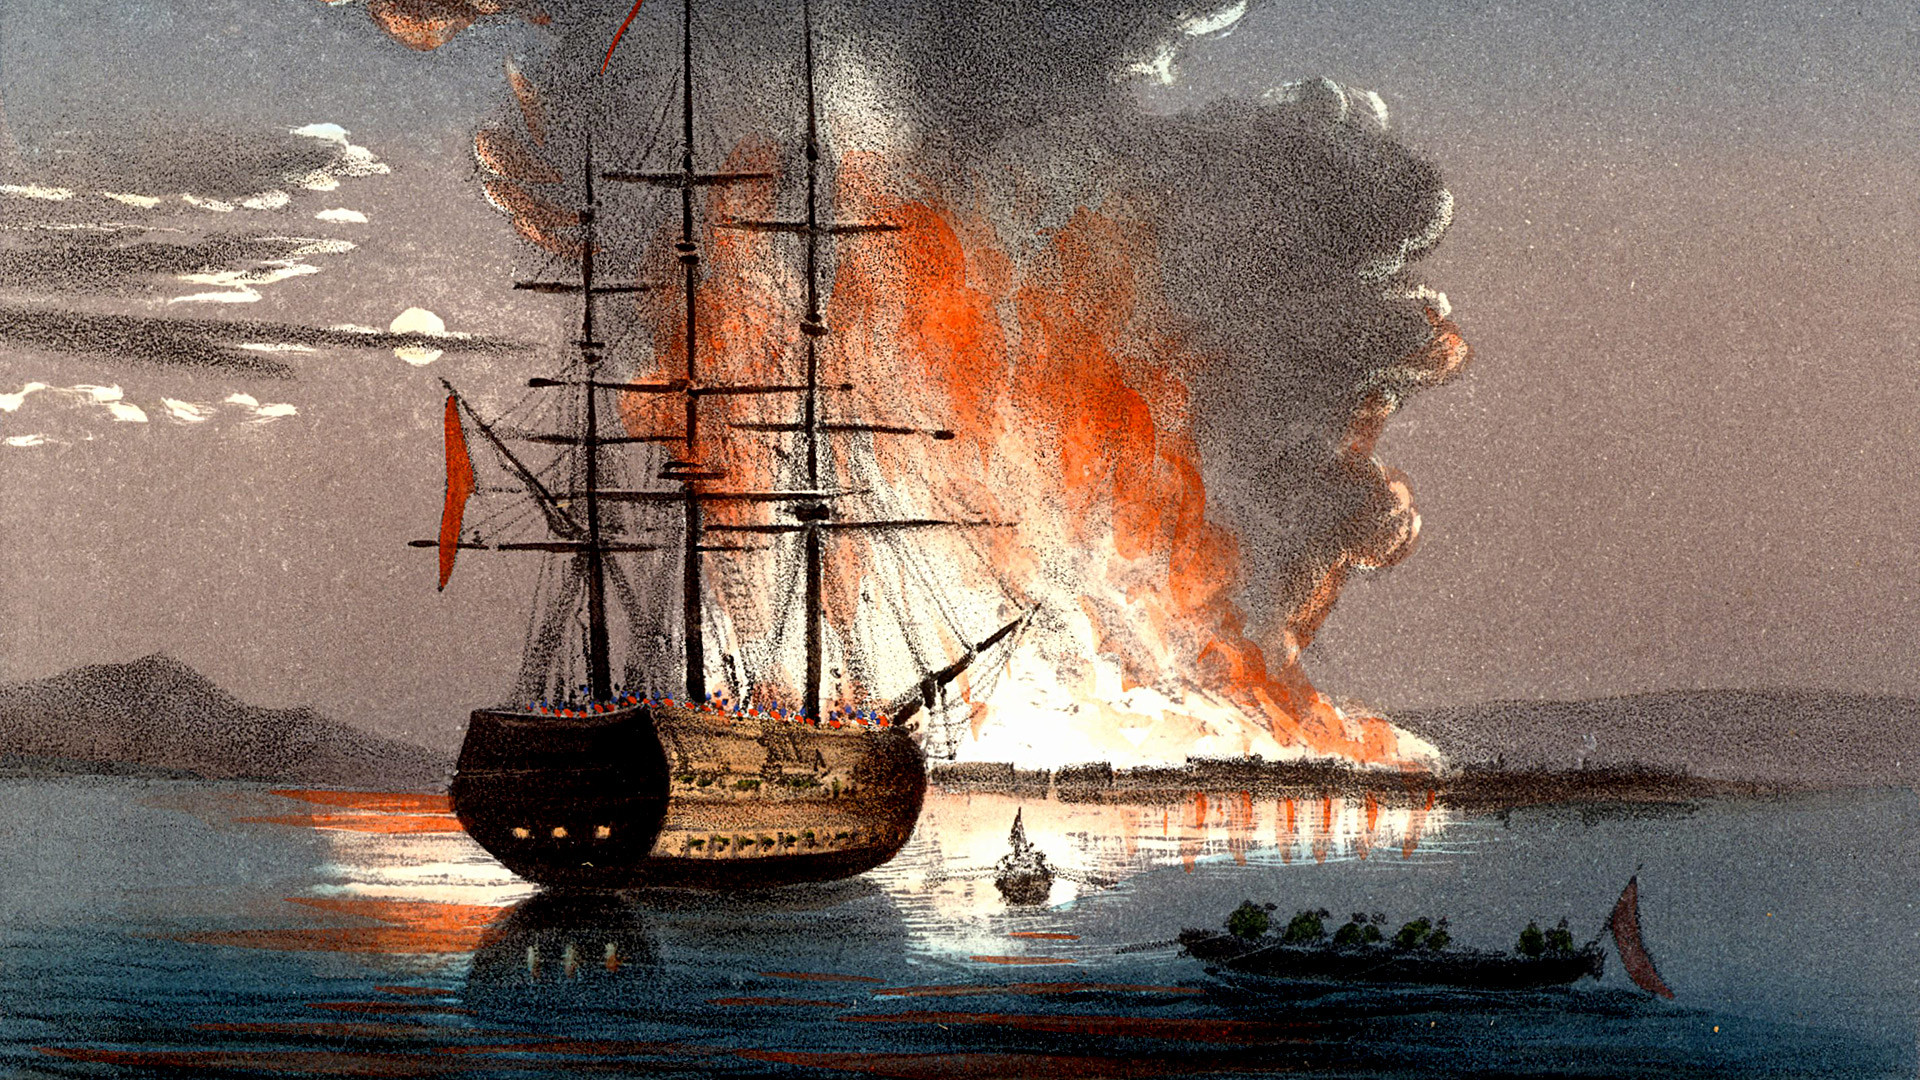 Pembakaran kapal di Kale (Canakkale) di Dardanelles (Hellespont) selama Perang Krimea. Litograf berwarna diterbitkan di Italia pada 1857.